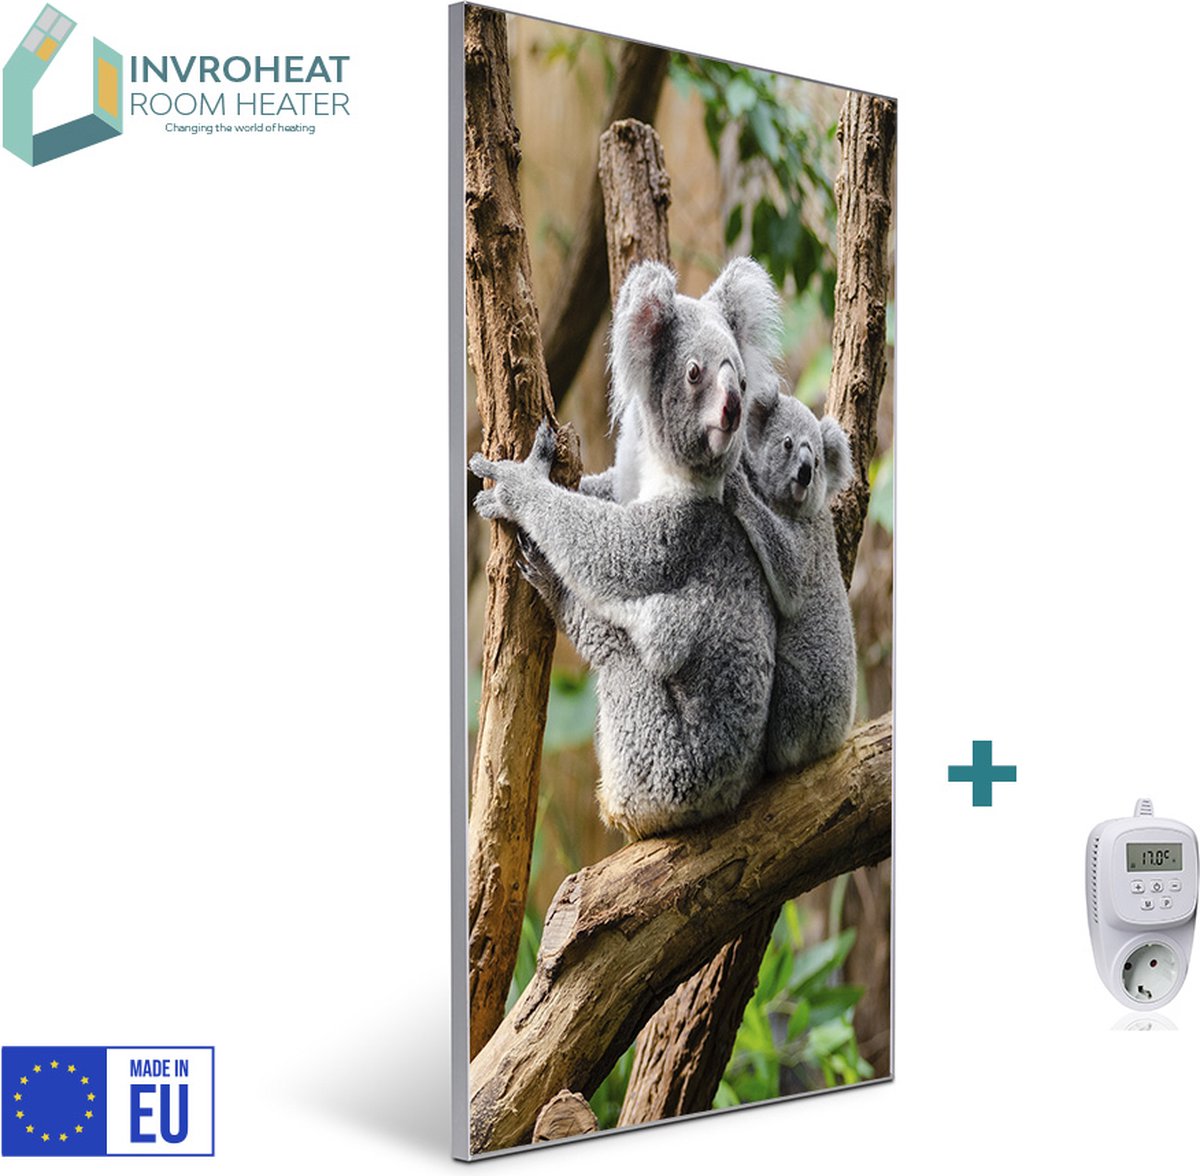 Invroheat infrarood verwarmingspaneel 2 Koala’s - 800W - 61x91.5cm - Duurzaam, zeer energie efficiënt en warmt snel op - afbeelding verwisselbaar - met thermostaat